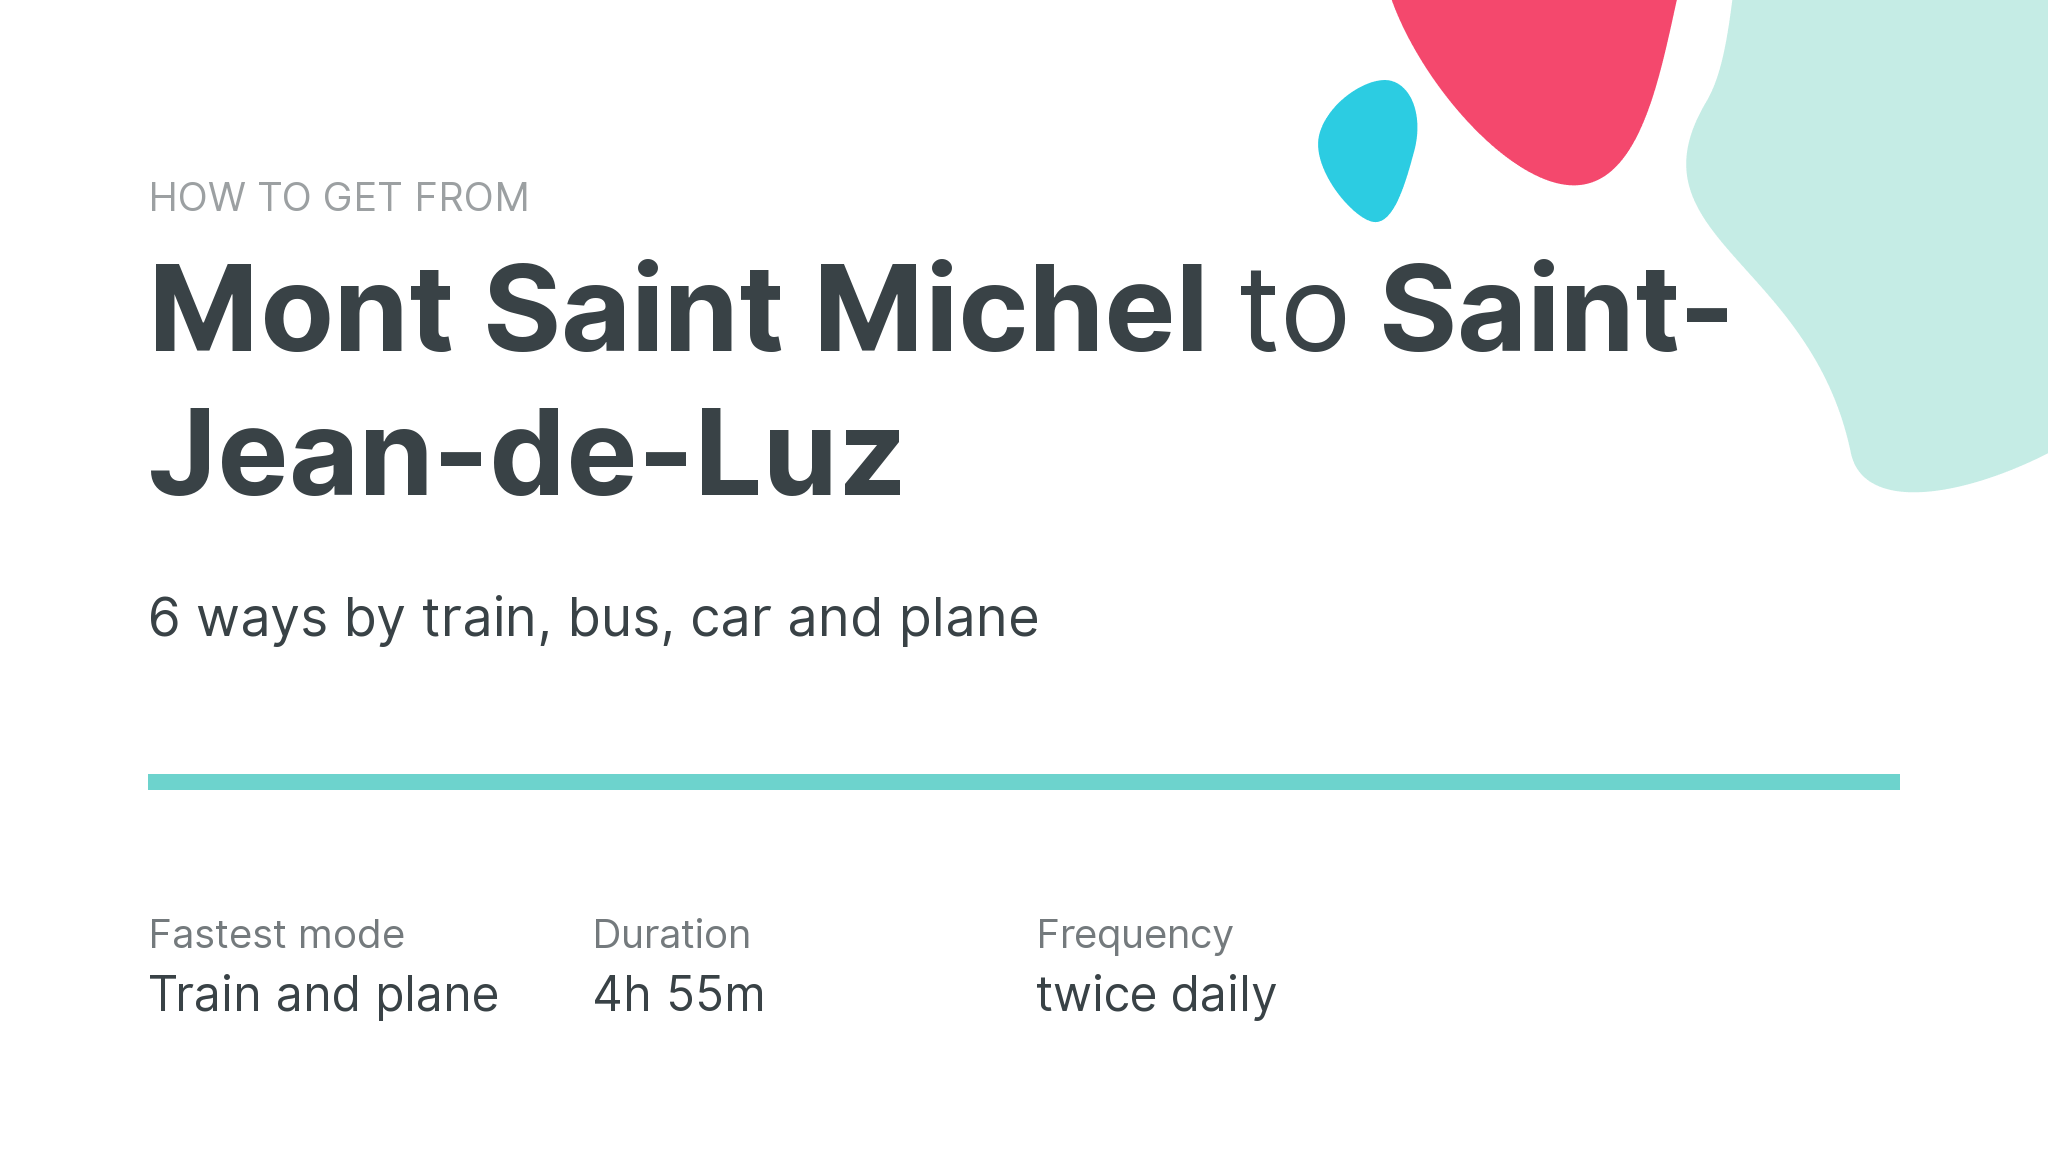 How do I get from Mont Saint Michel to Saint-Jean-de-Luz